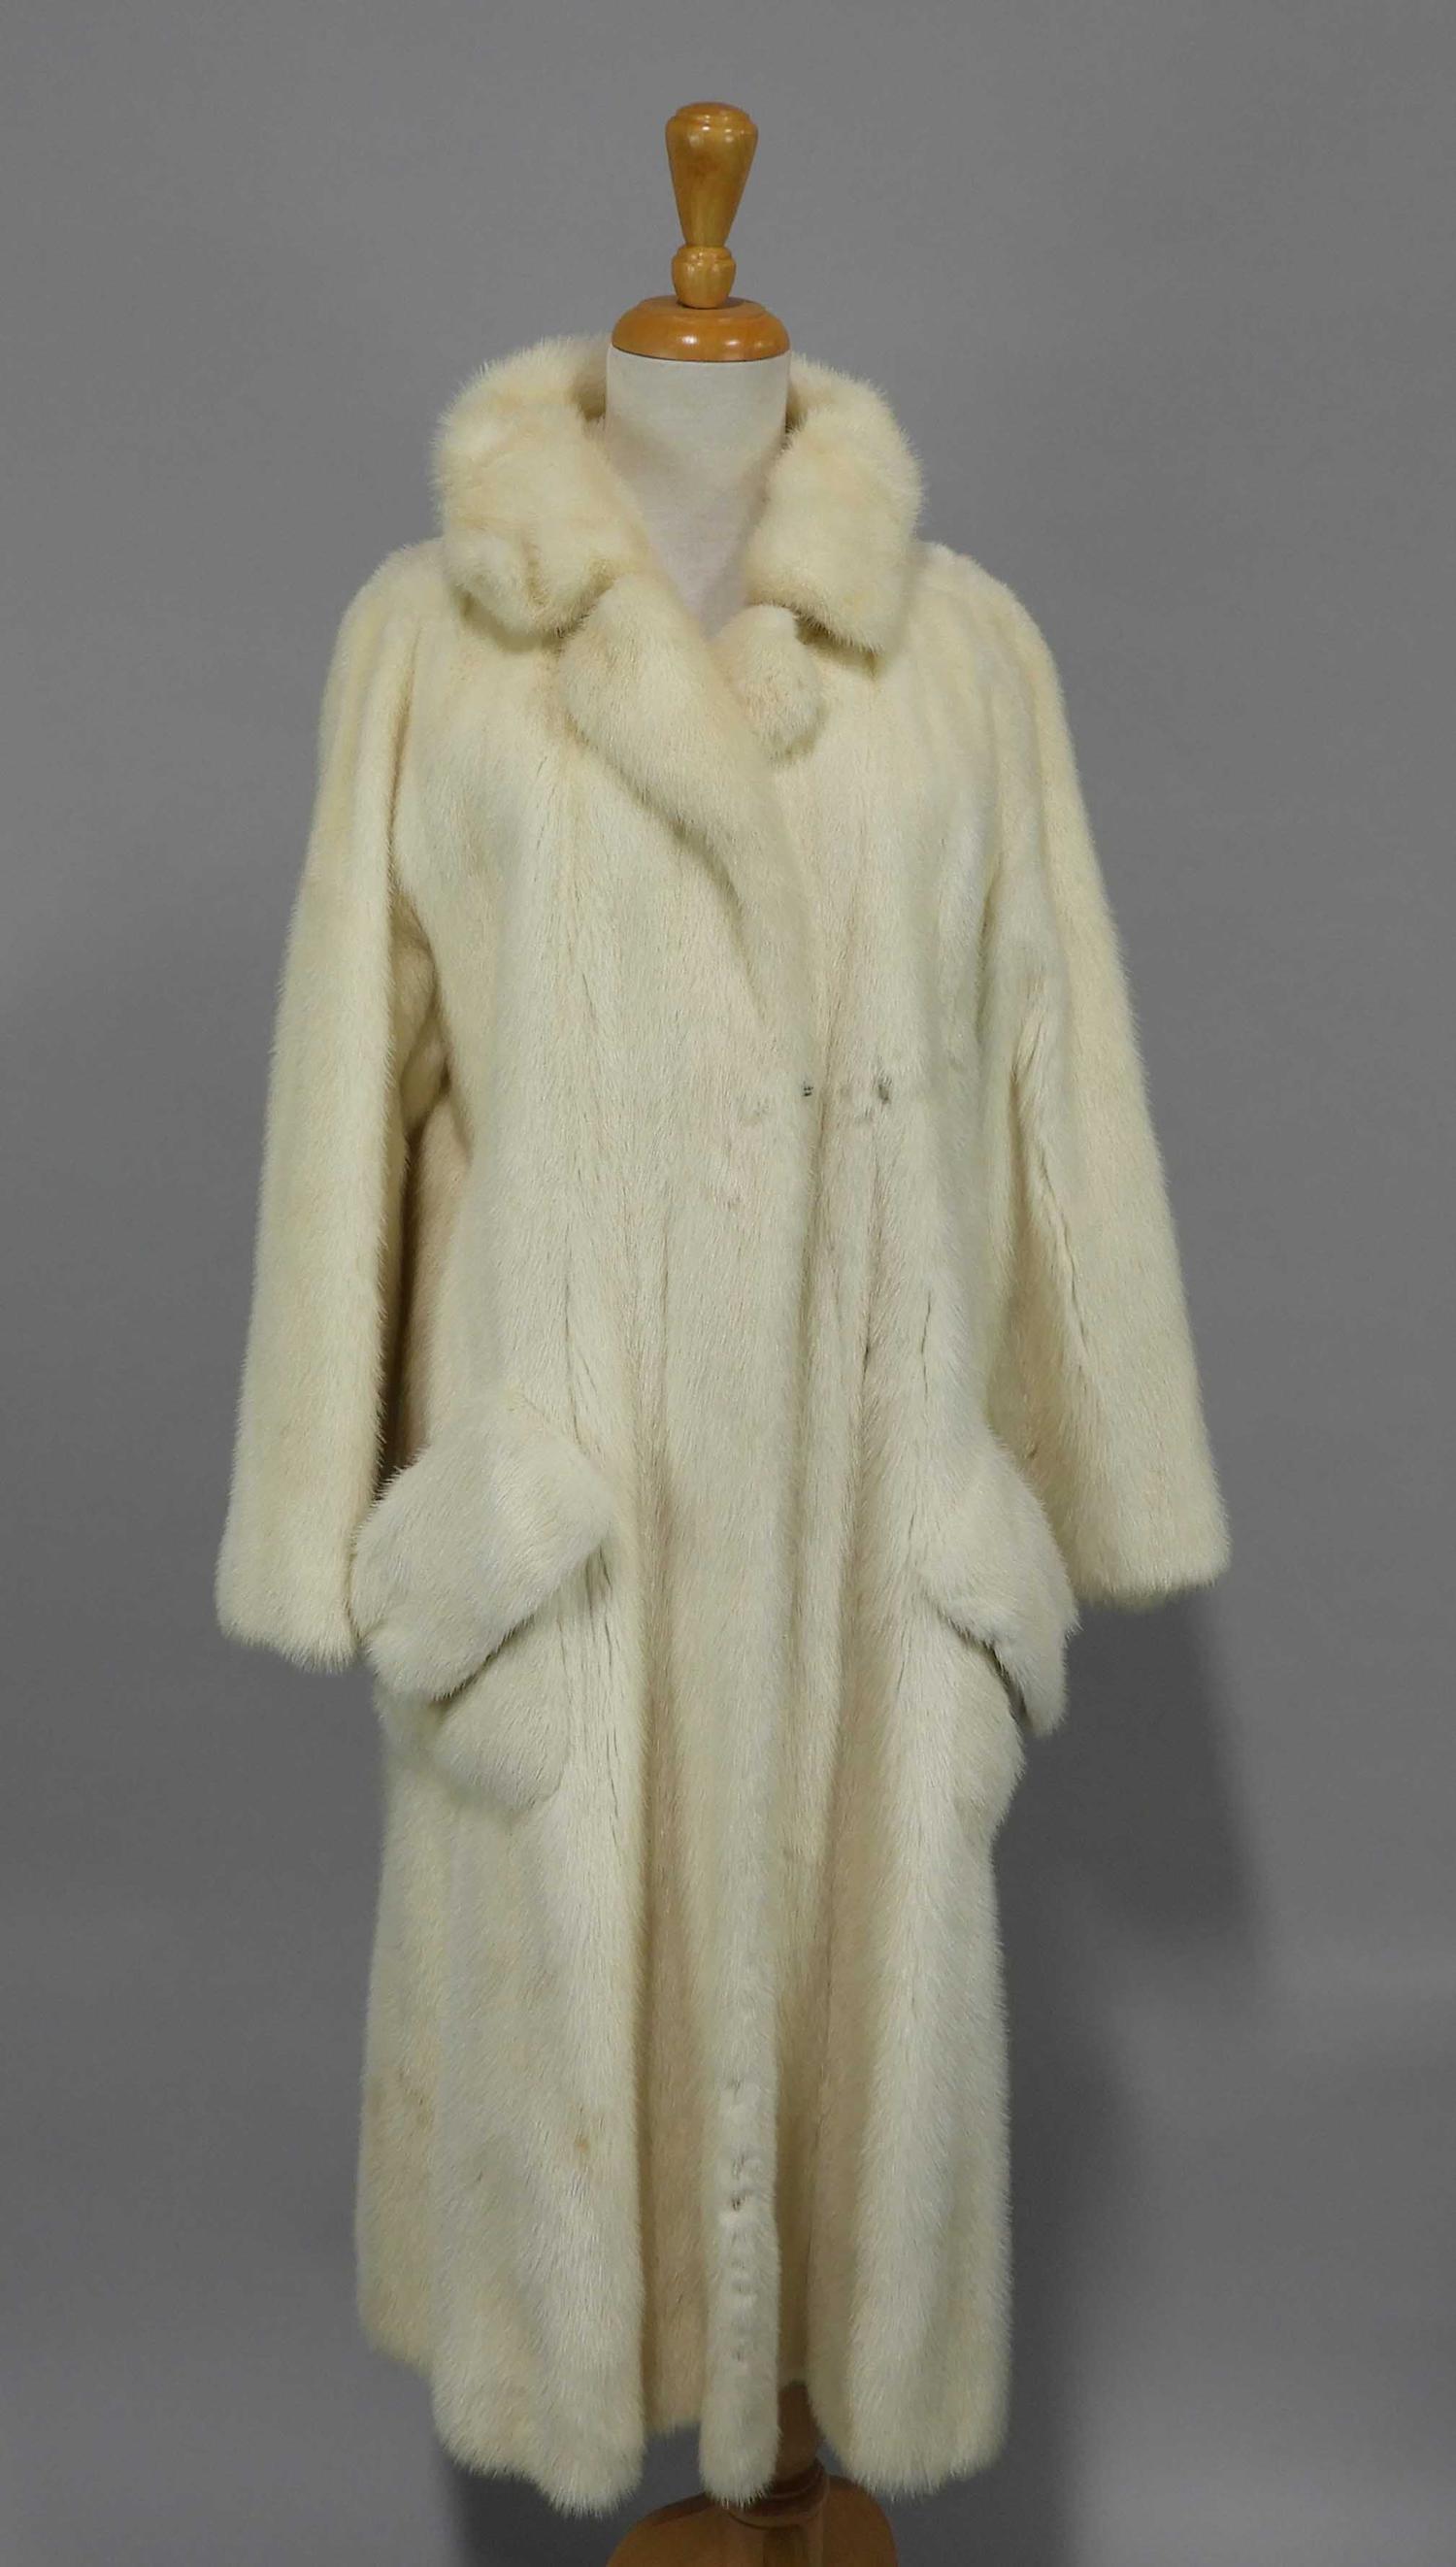 Murrays Auctioneers - Lot 26f: Full length white mink coat, Holt Renfrew